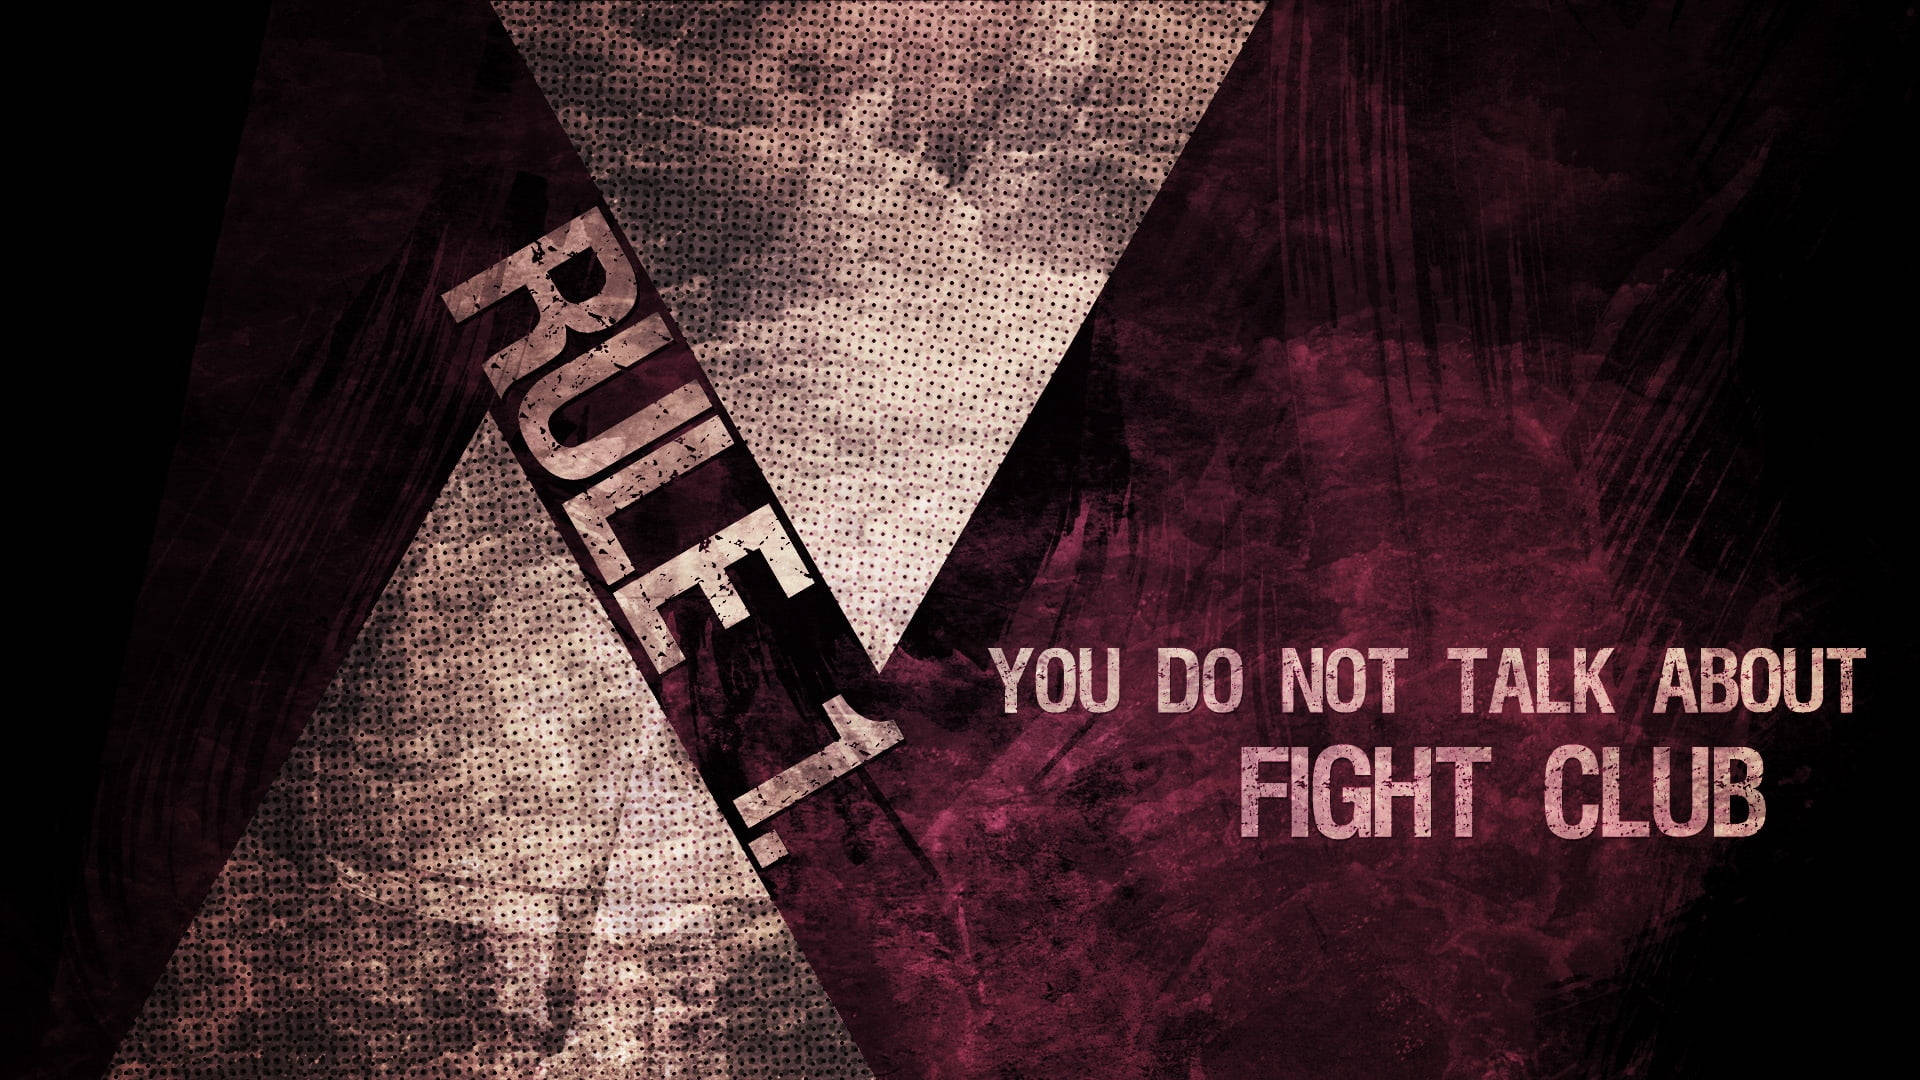 Fight Club Hintergrundbild 1920x1080. Free Fight Club Wallpaper Downloads, Fight Club Wallpaper for FREE